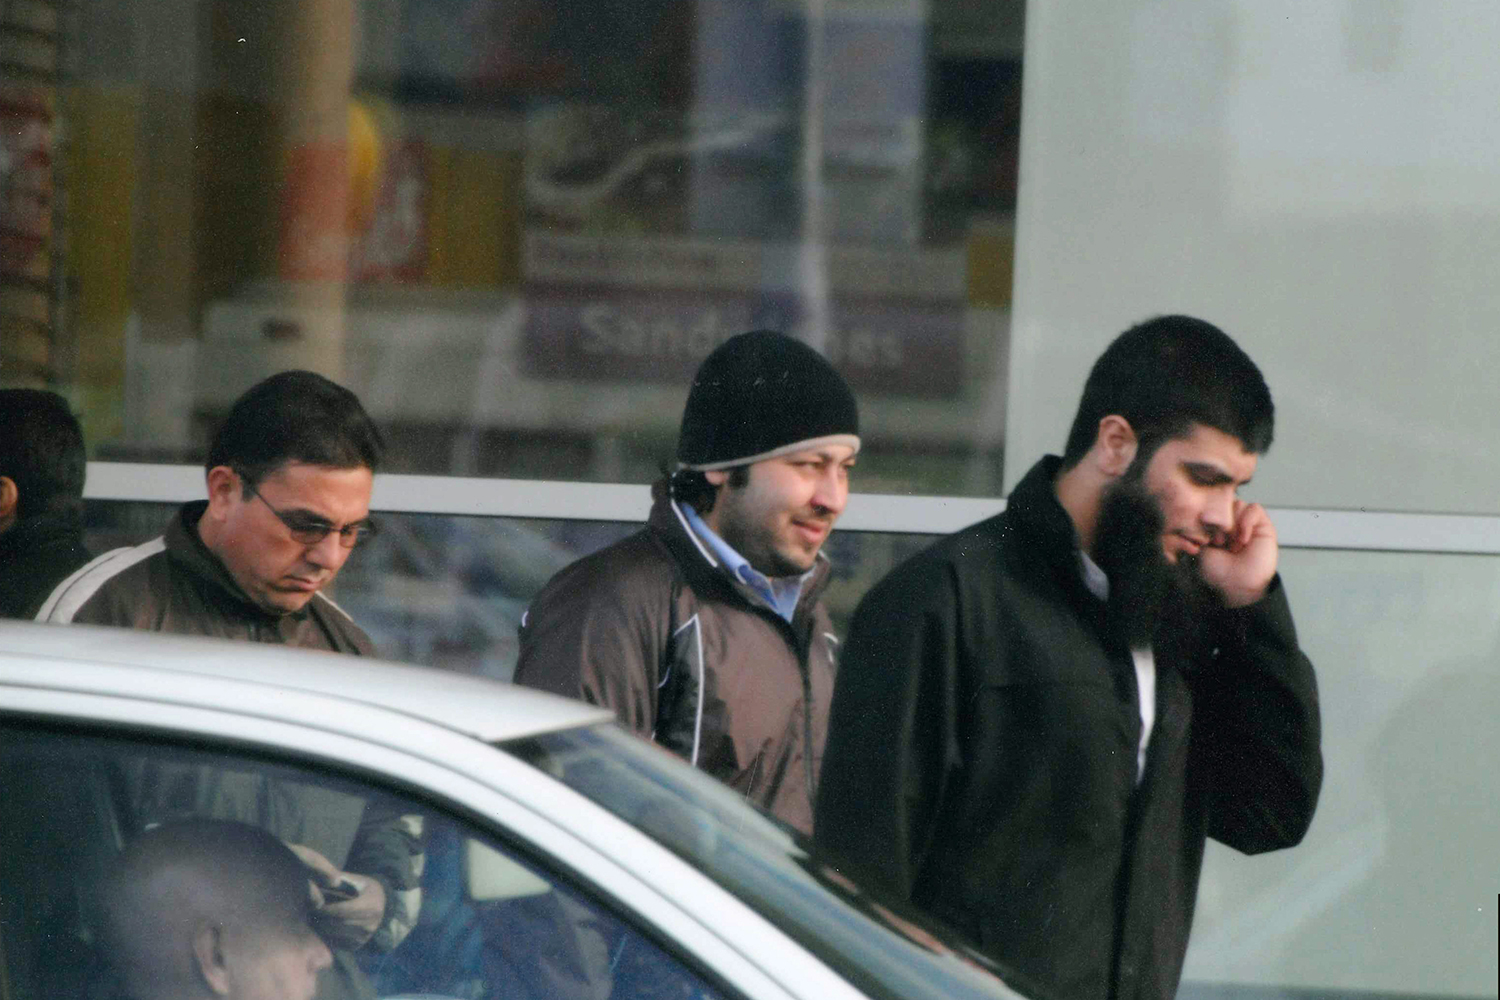 Condenan a 40 años a un terrorista que planeaba hacer explotar un centro comercial en Manchester